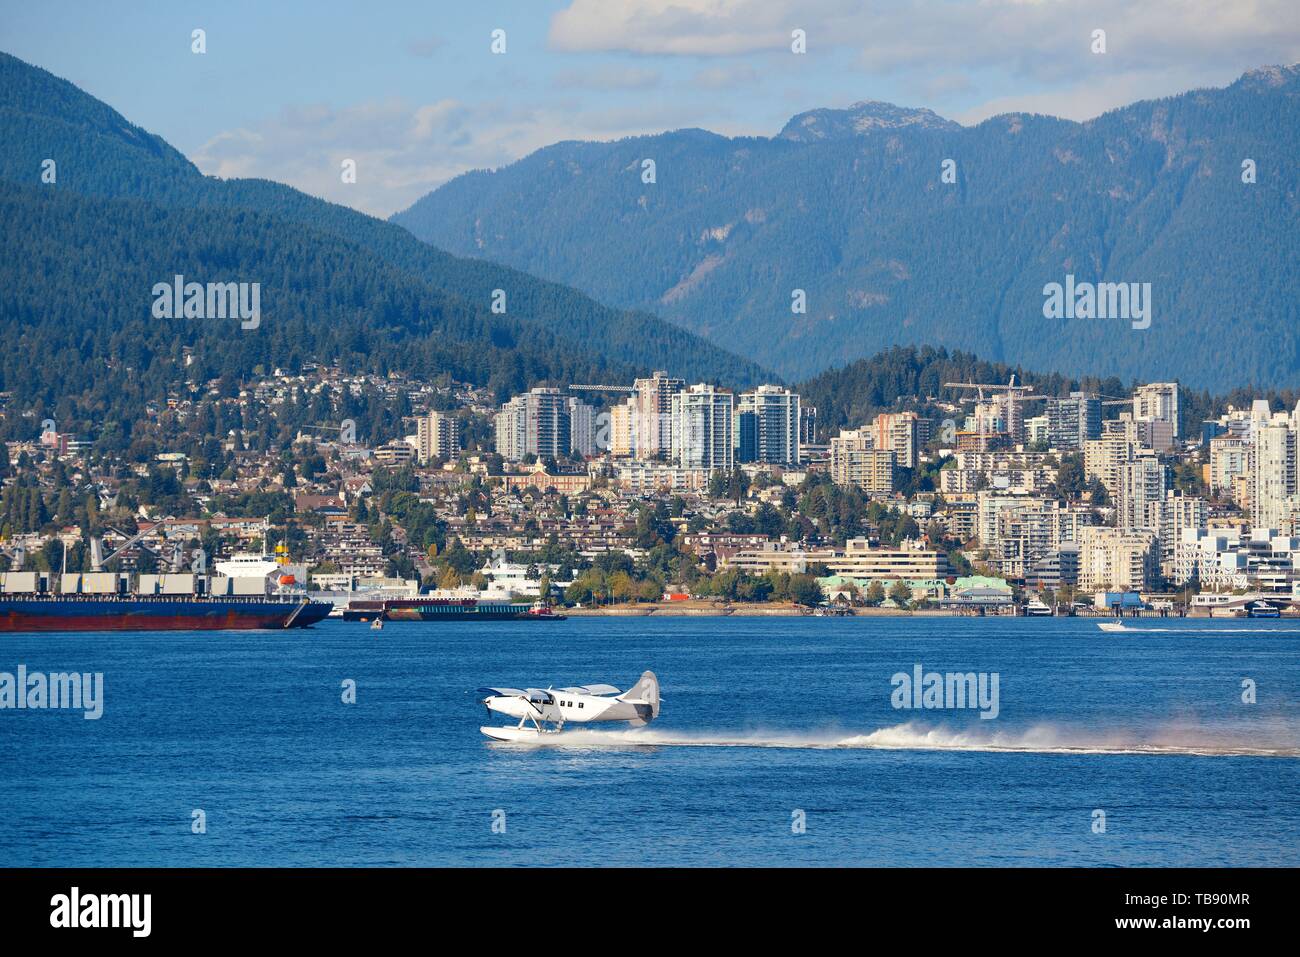 Un aquaplane prendendo il largo a Vancouver in Canada. Foto Stock